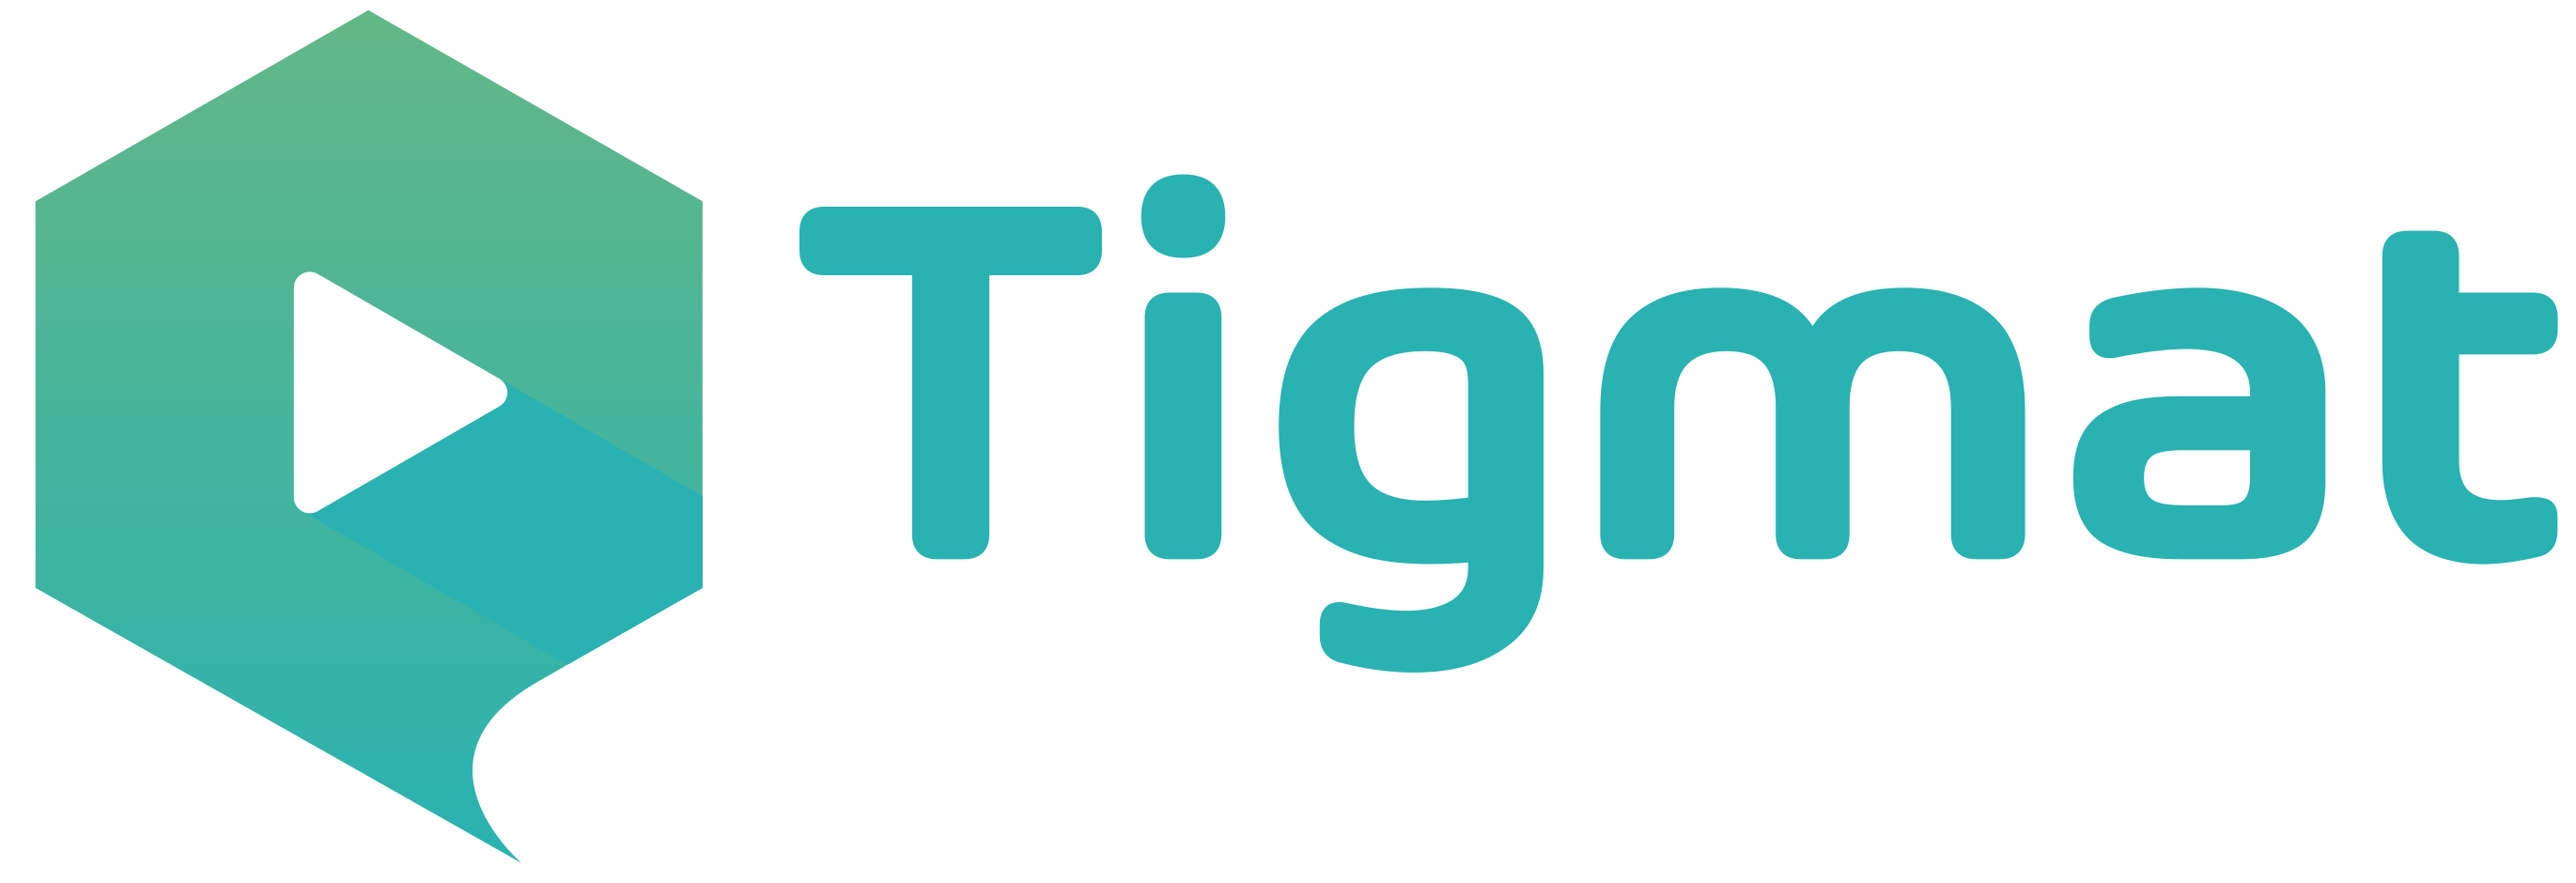 Tigmat logo